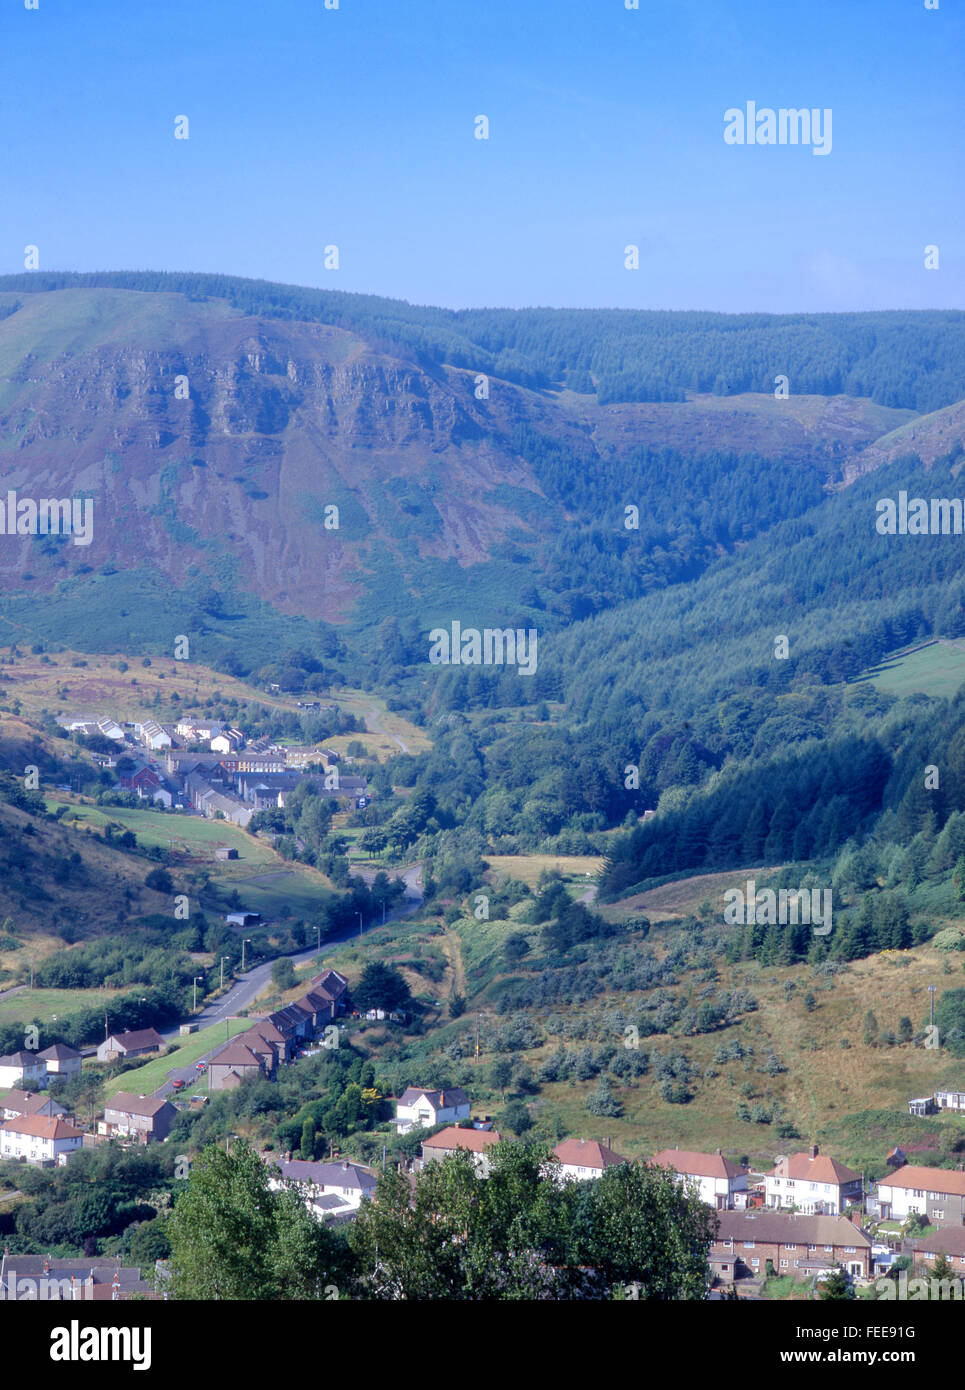 A nivel de jefe de aldea Blaencwm Fawr Rhondda Valley South Wales Valles Rhondda Cynon Taf Gales UK Foto de stock